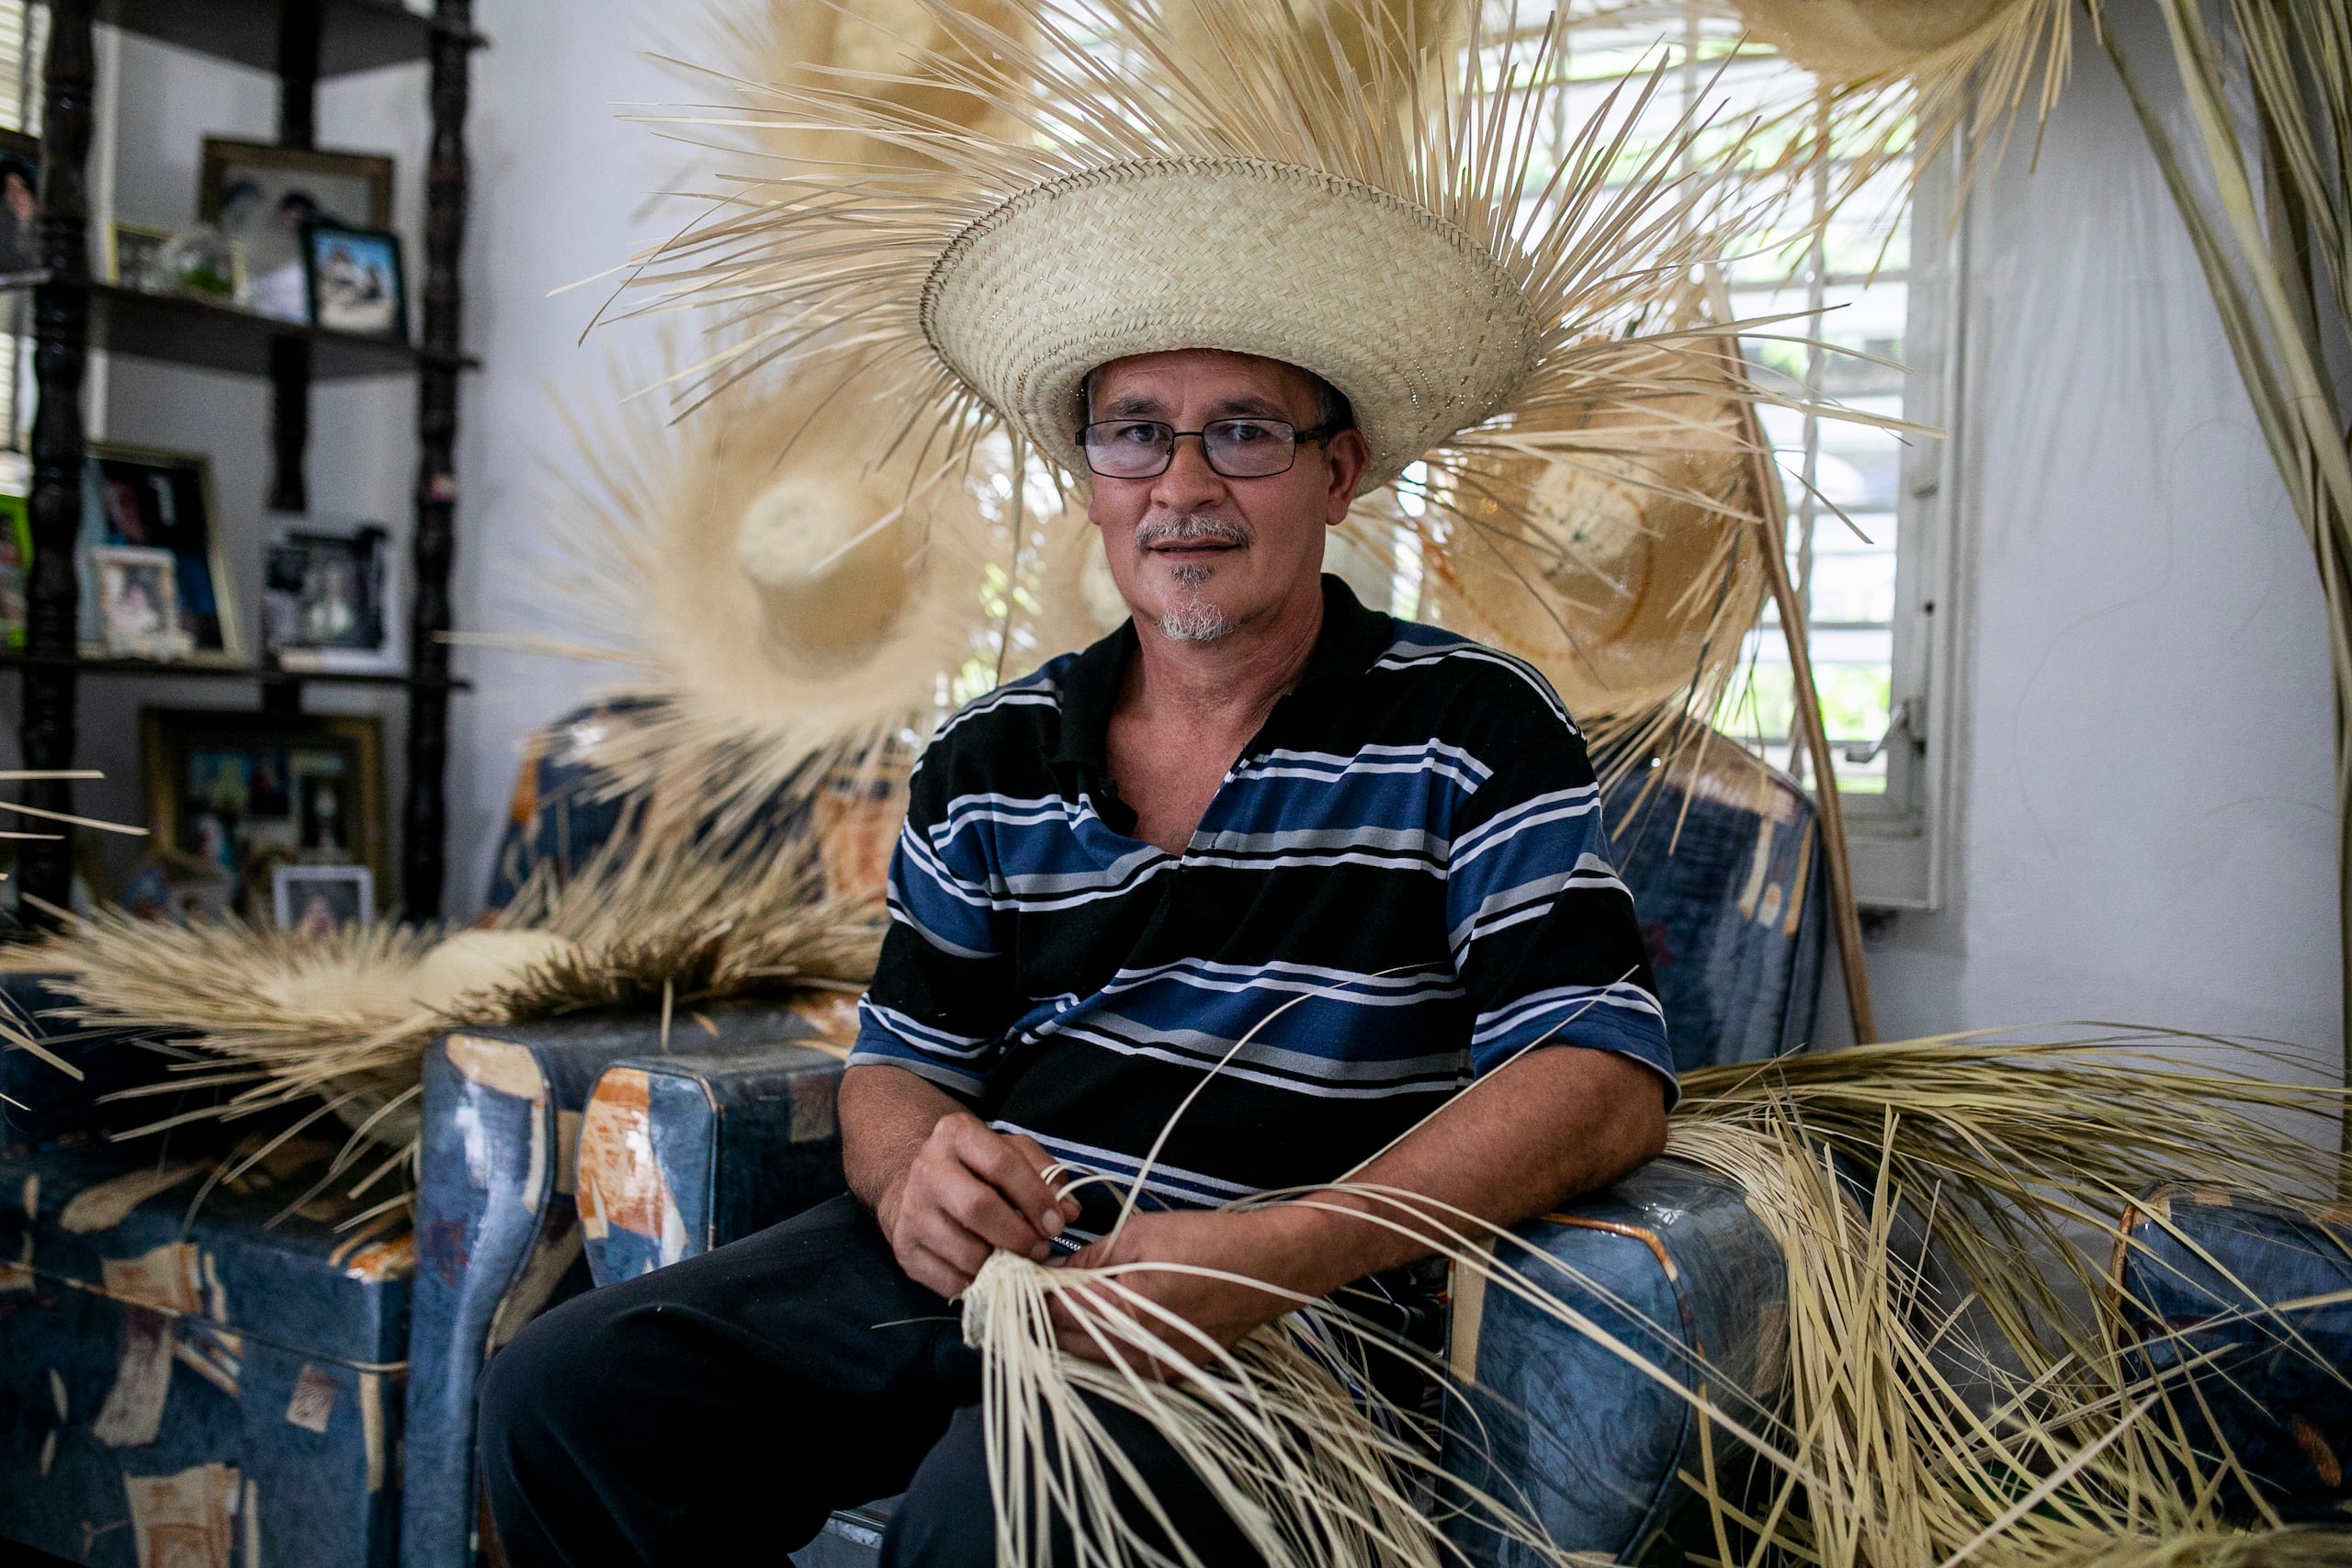 El tiempo que le dedica a sus artesanías es al terminar su jornada de trabajo regular, cuando se sienta a entrelazar las hojas de palma frente al televisor en su casa, en el barrio Cerro Gordo.